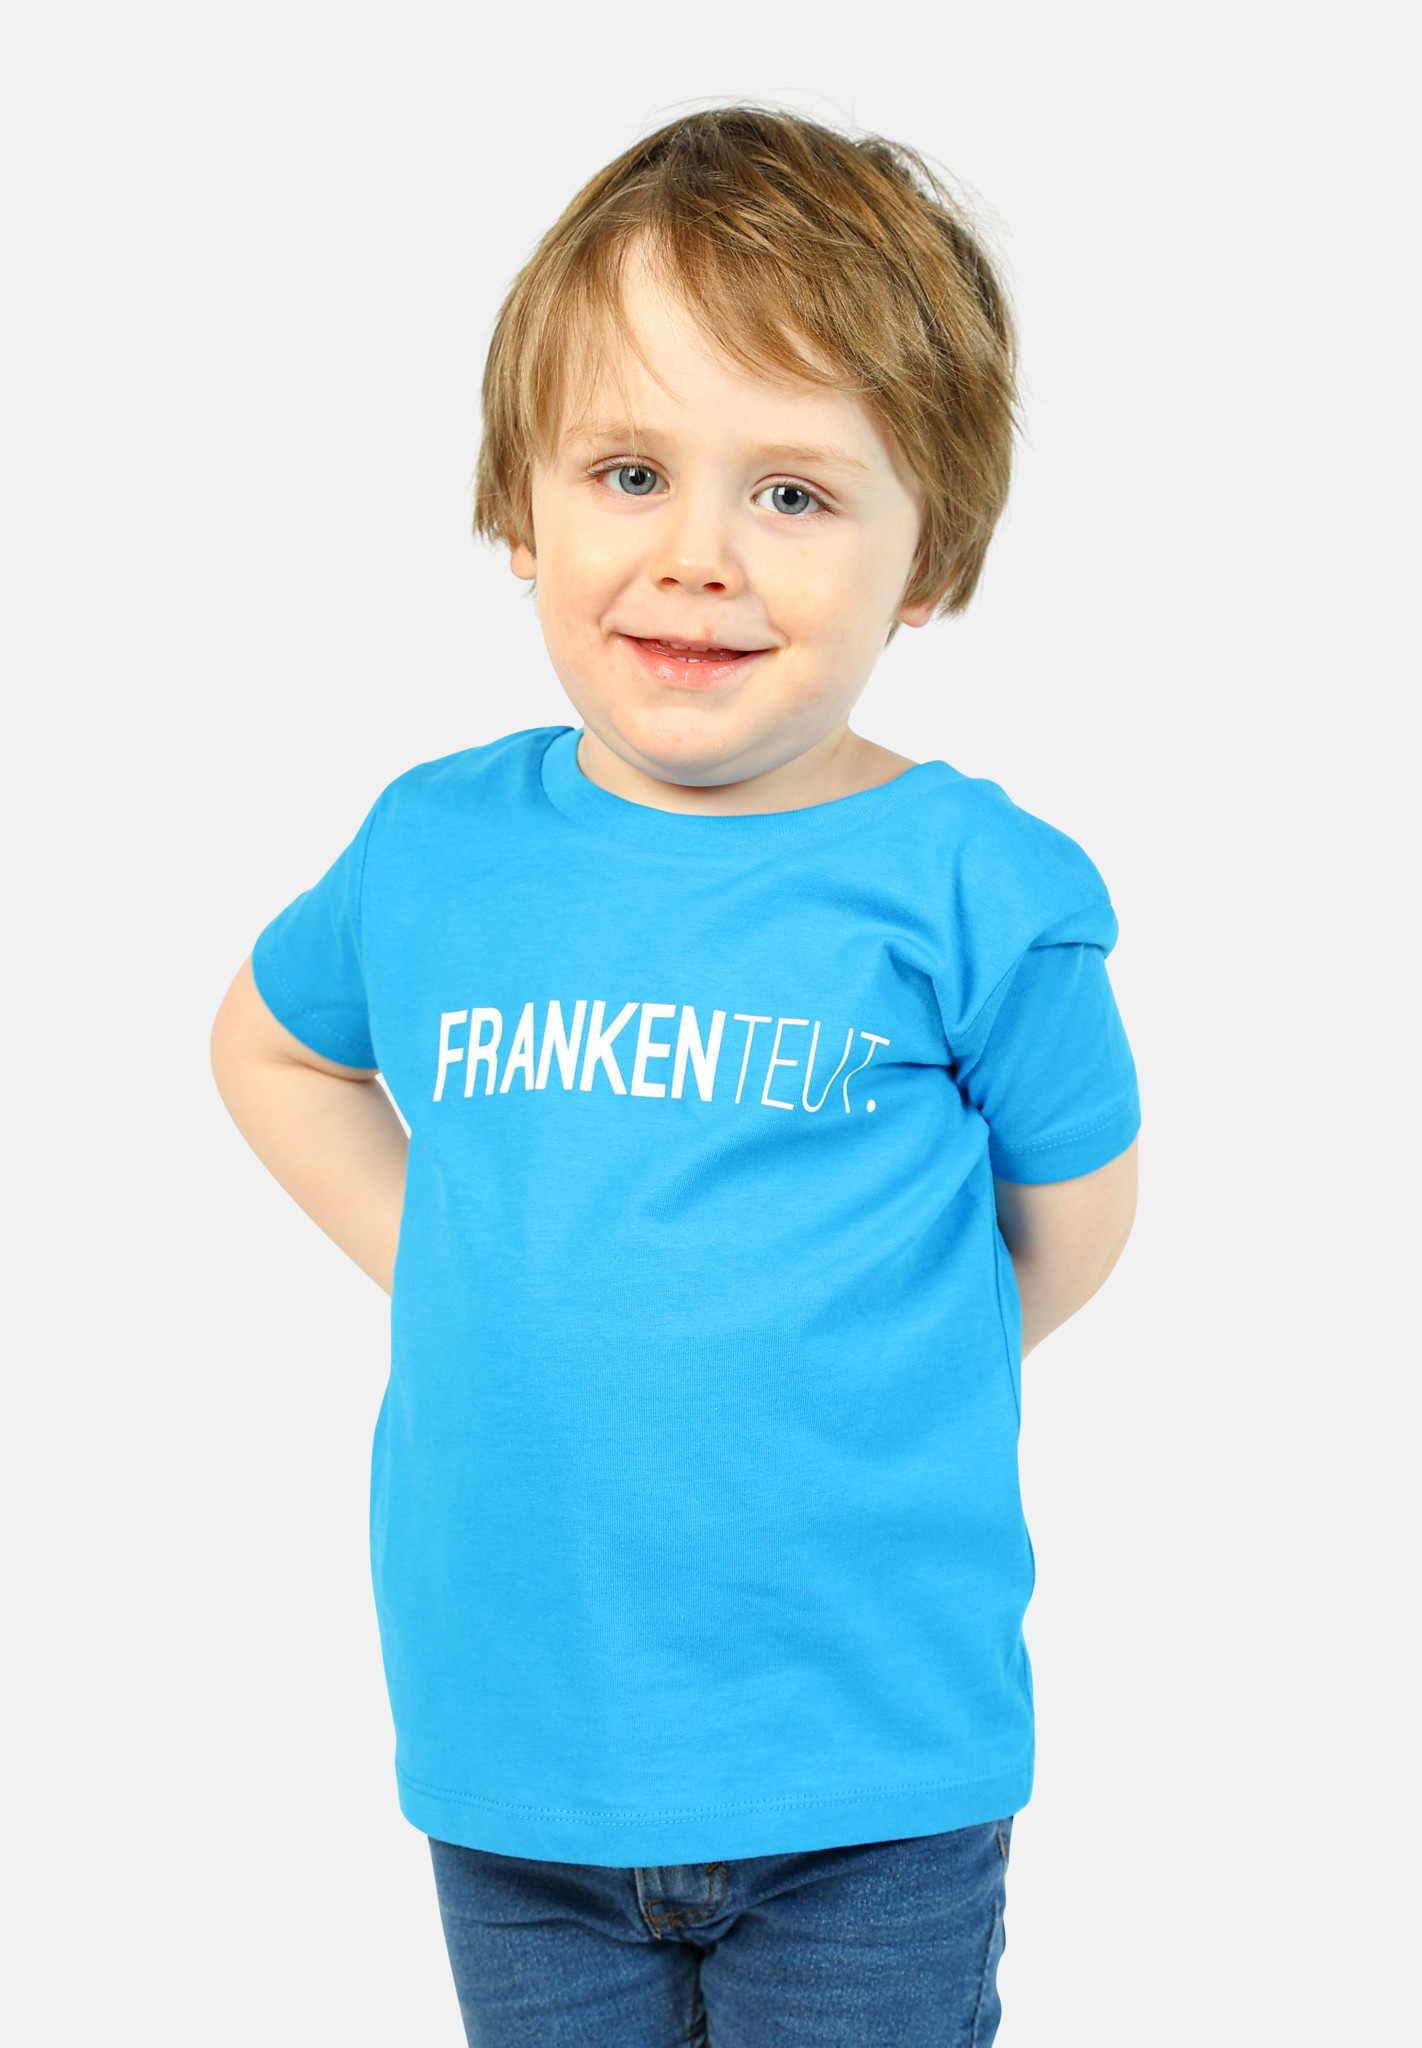 Knuppel wang fascisme Frankenteut. - t-shirt - kinderen - CDKN with friends conceptstore